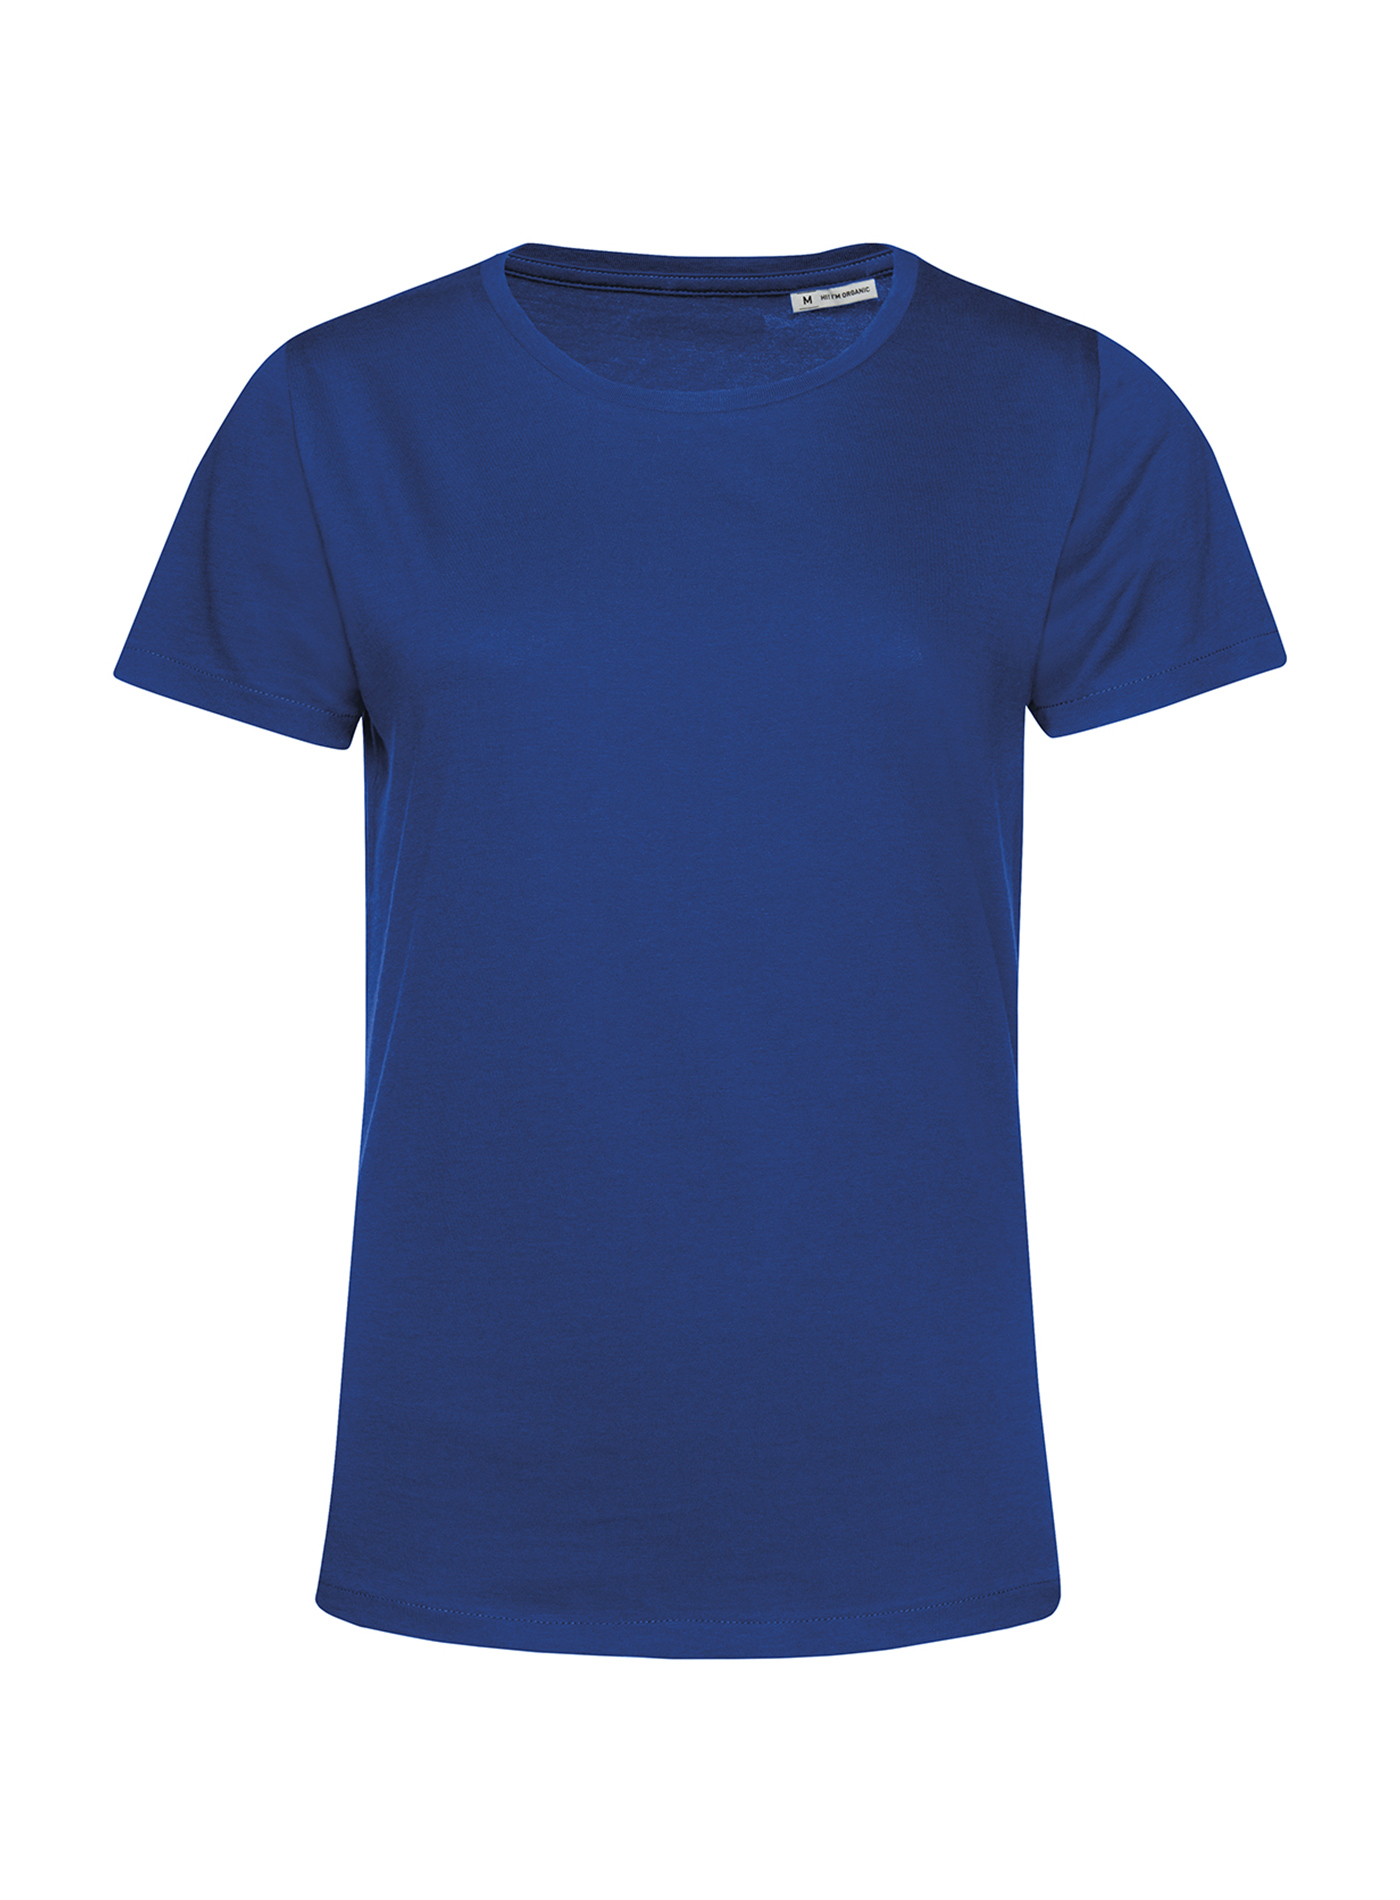 Dámské tričko B&C Collection Organic - Královská modrá L